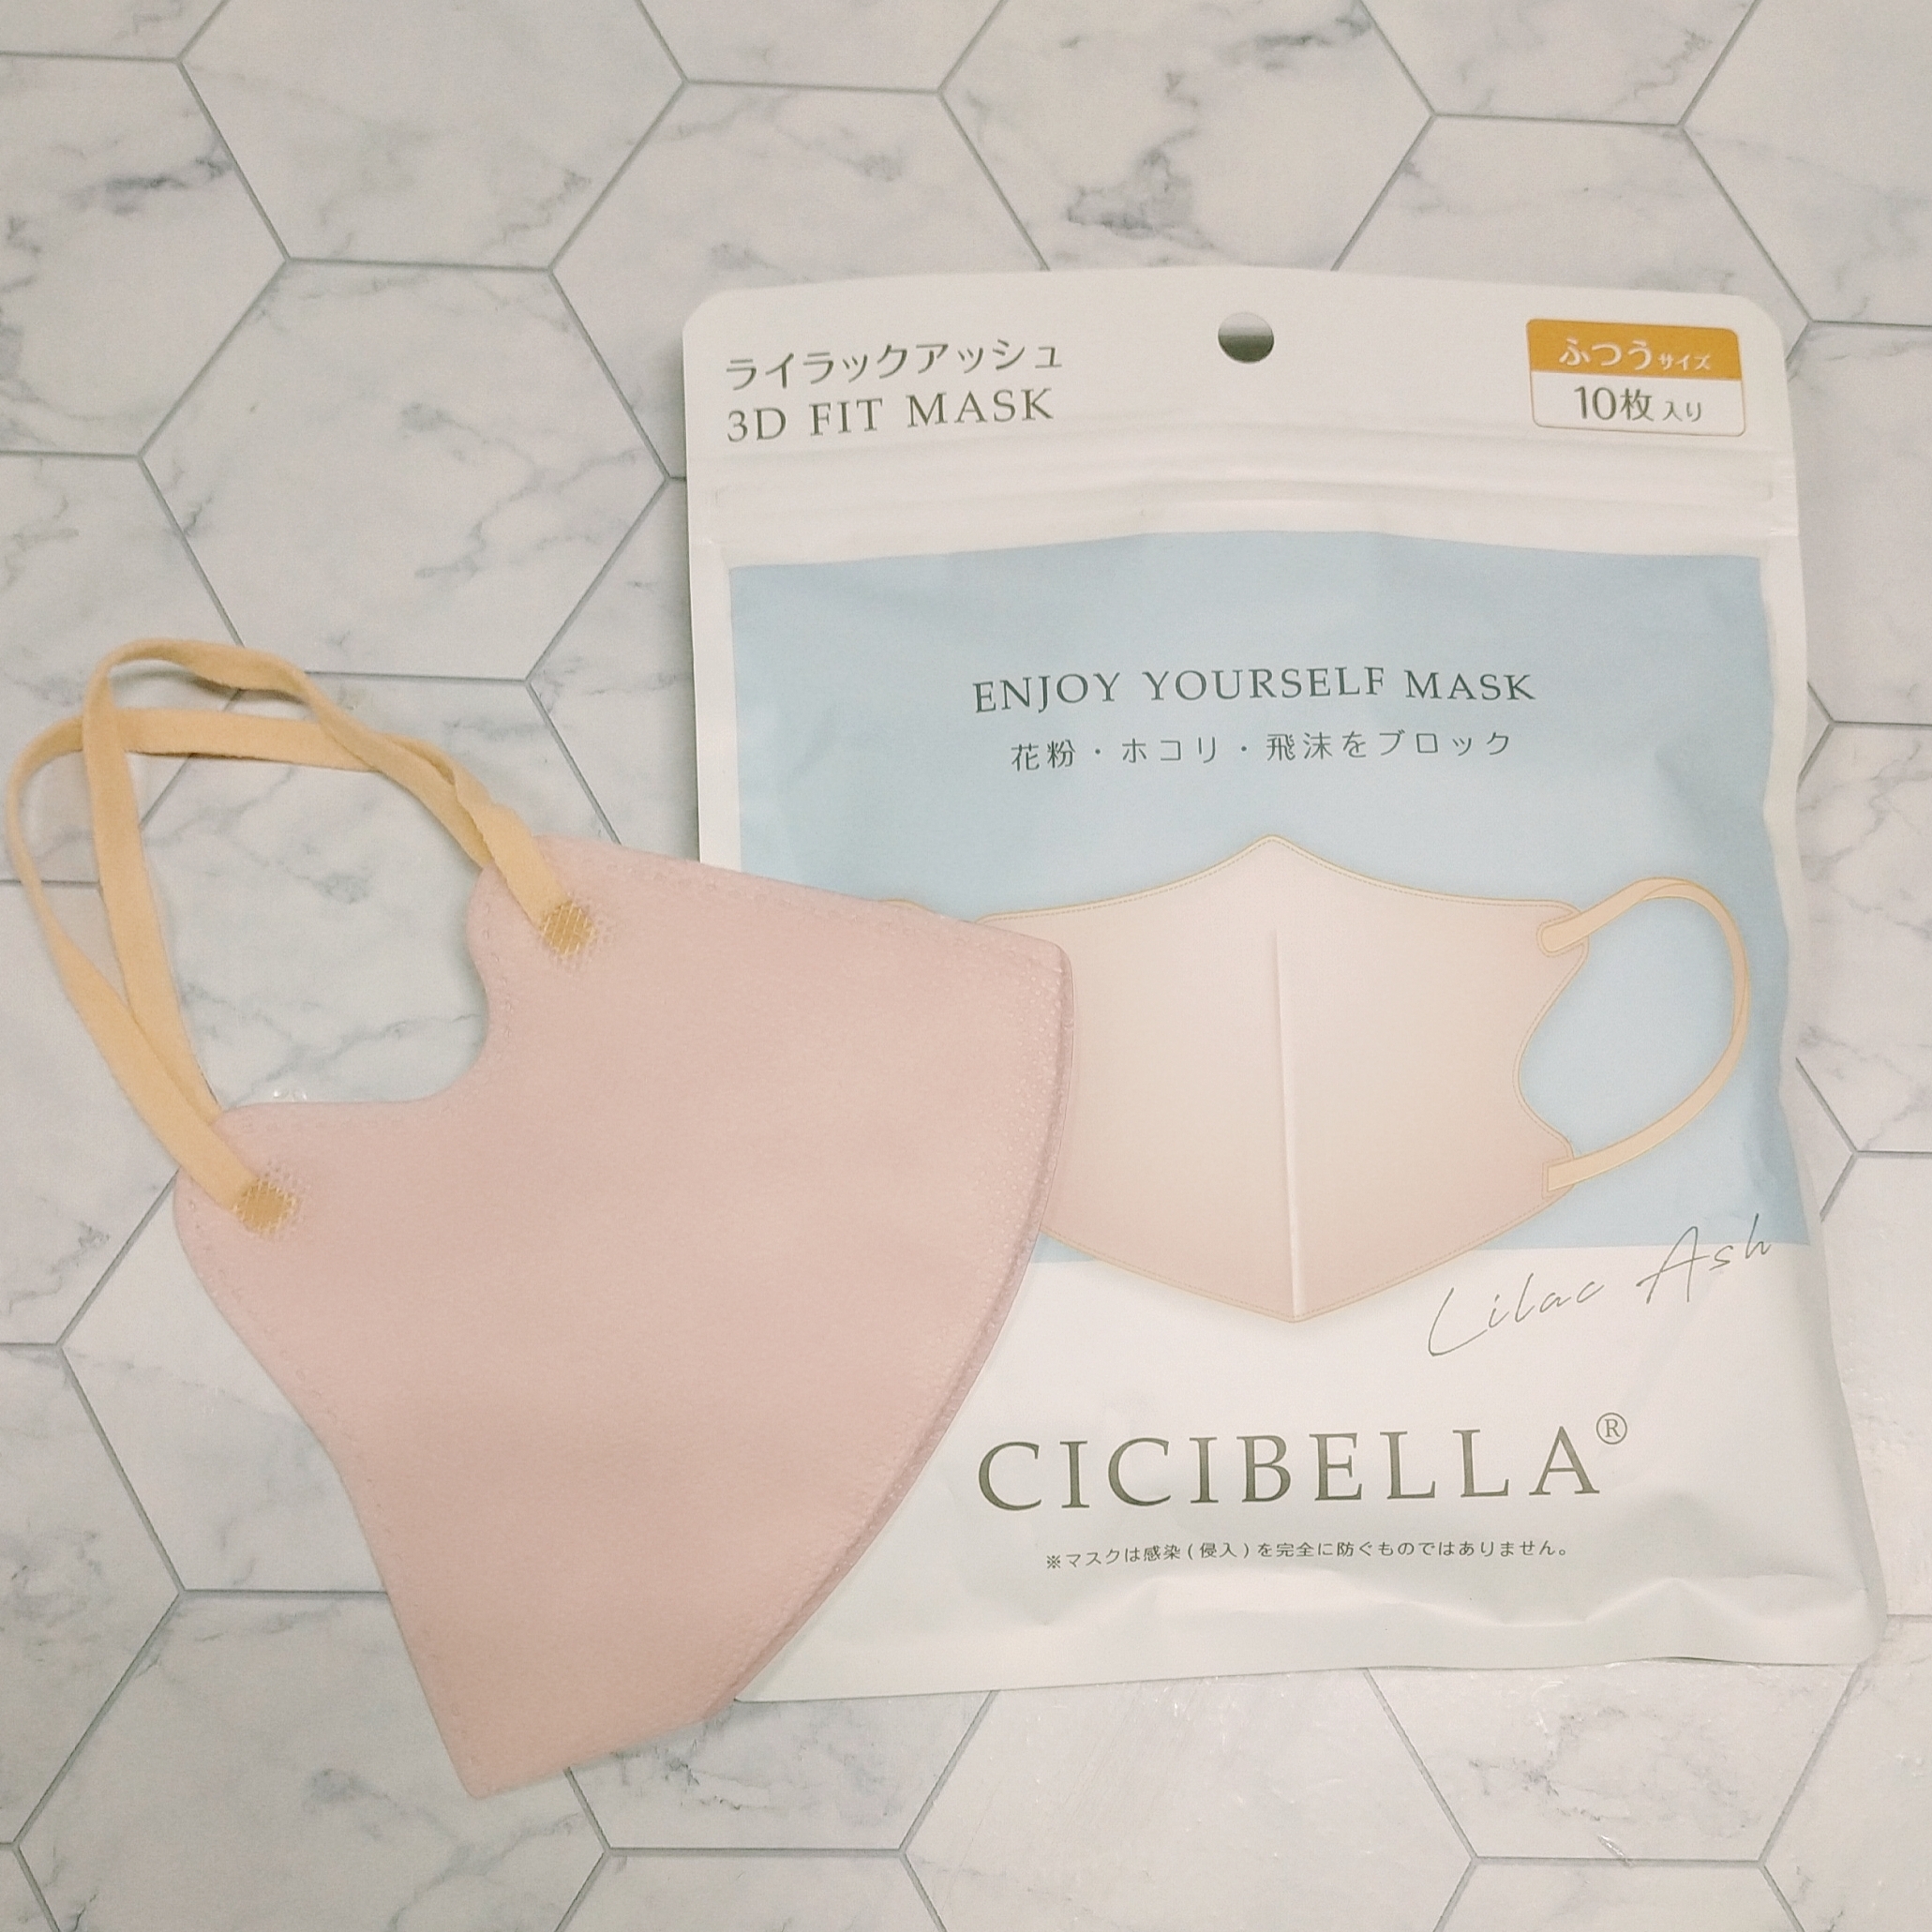 CICIBELLA(シシベラ) 3D立体マスクの良い点・メリットに関するみこさんの口コミ画像2